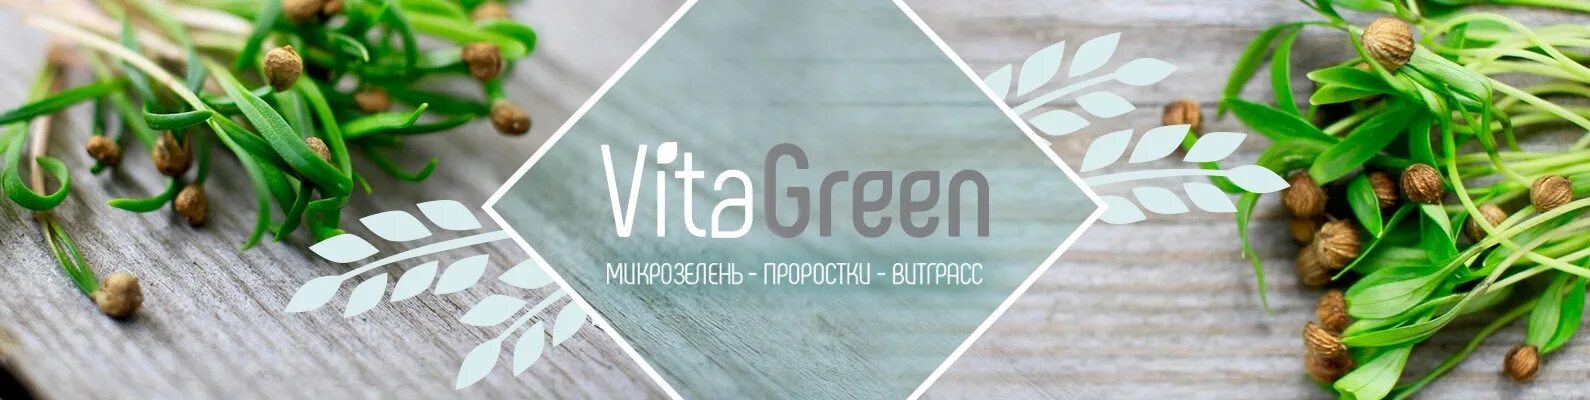 Vita green. Микрозелень. Визитки для микрозелени. Микрозелень логотип. Микрозелень этикетка.